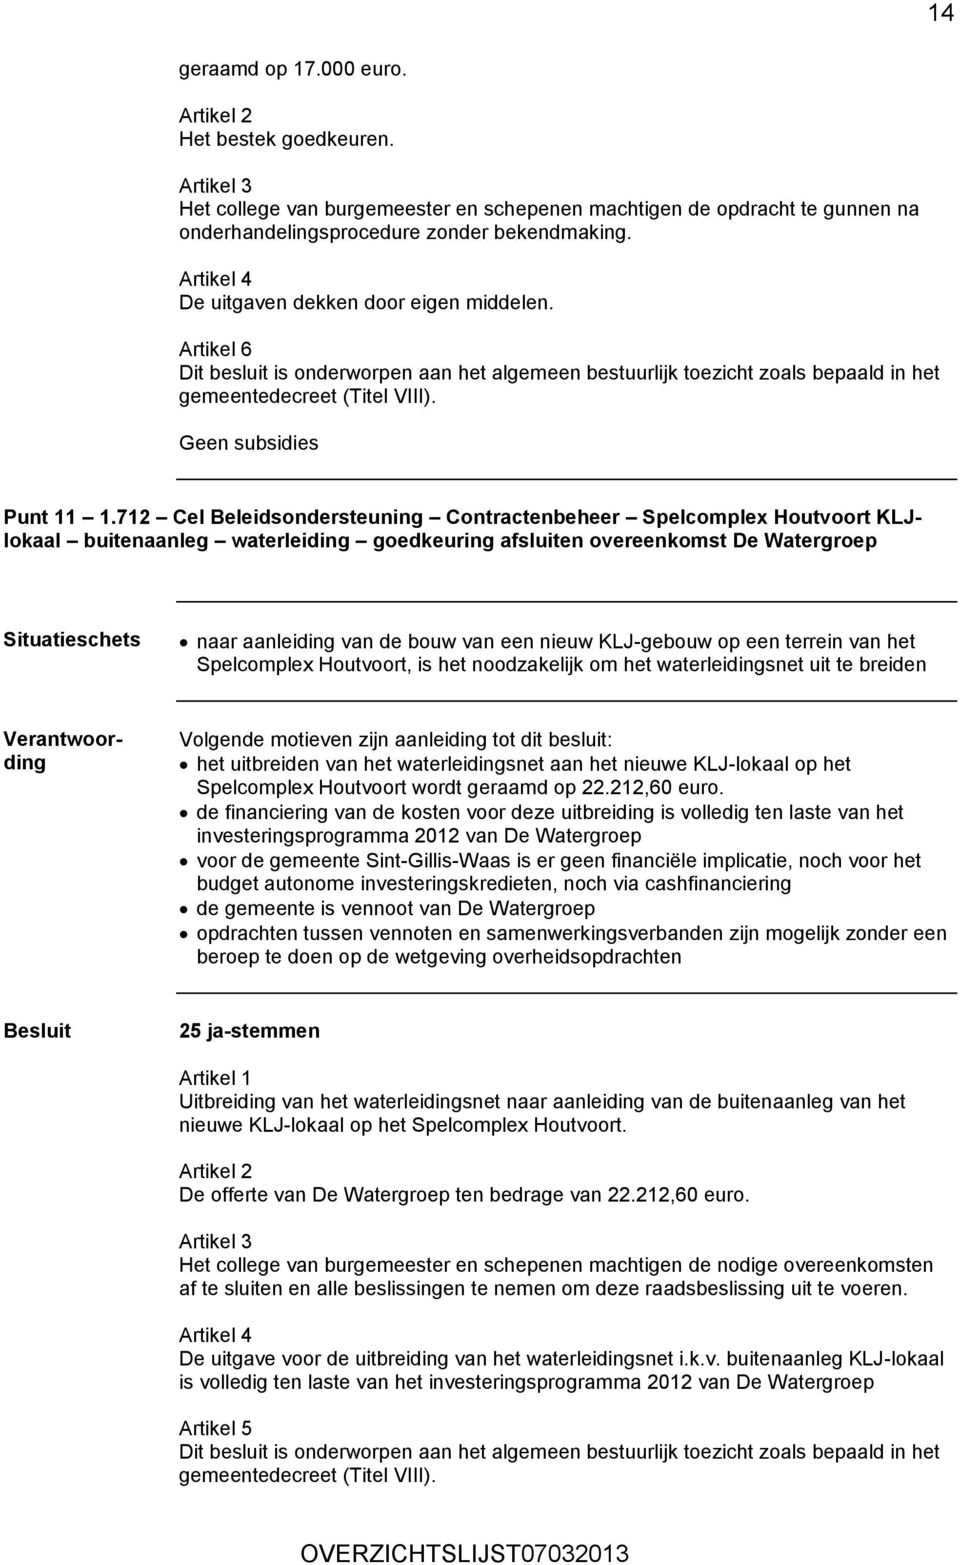 712 Cel Beleidsondersteuning Contractenbeheer Spelcomplex Houtvoort KLJlokaal buitenaanleg waterleiding goedkeuring afsluiten overeenkomst De Watergroep naar aanleiding van de bouw van een nieuw